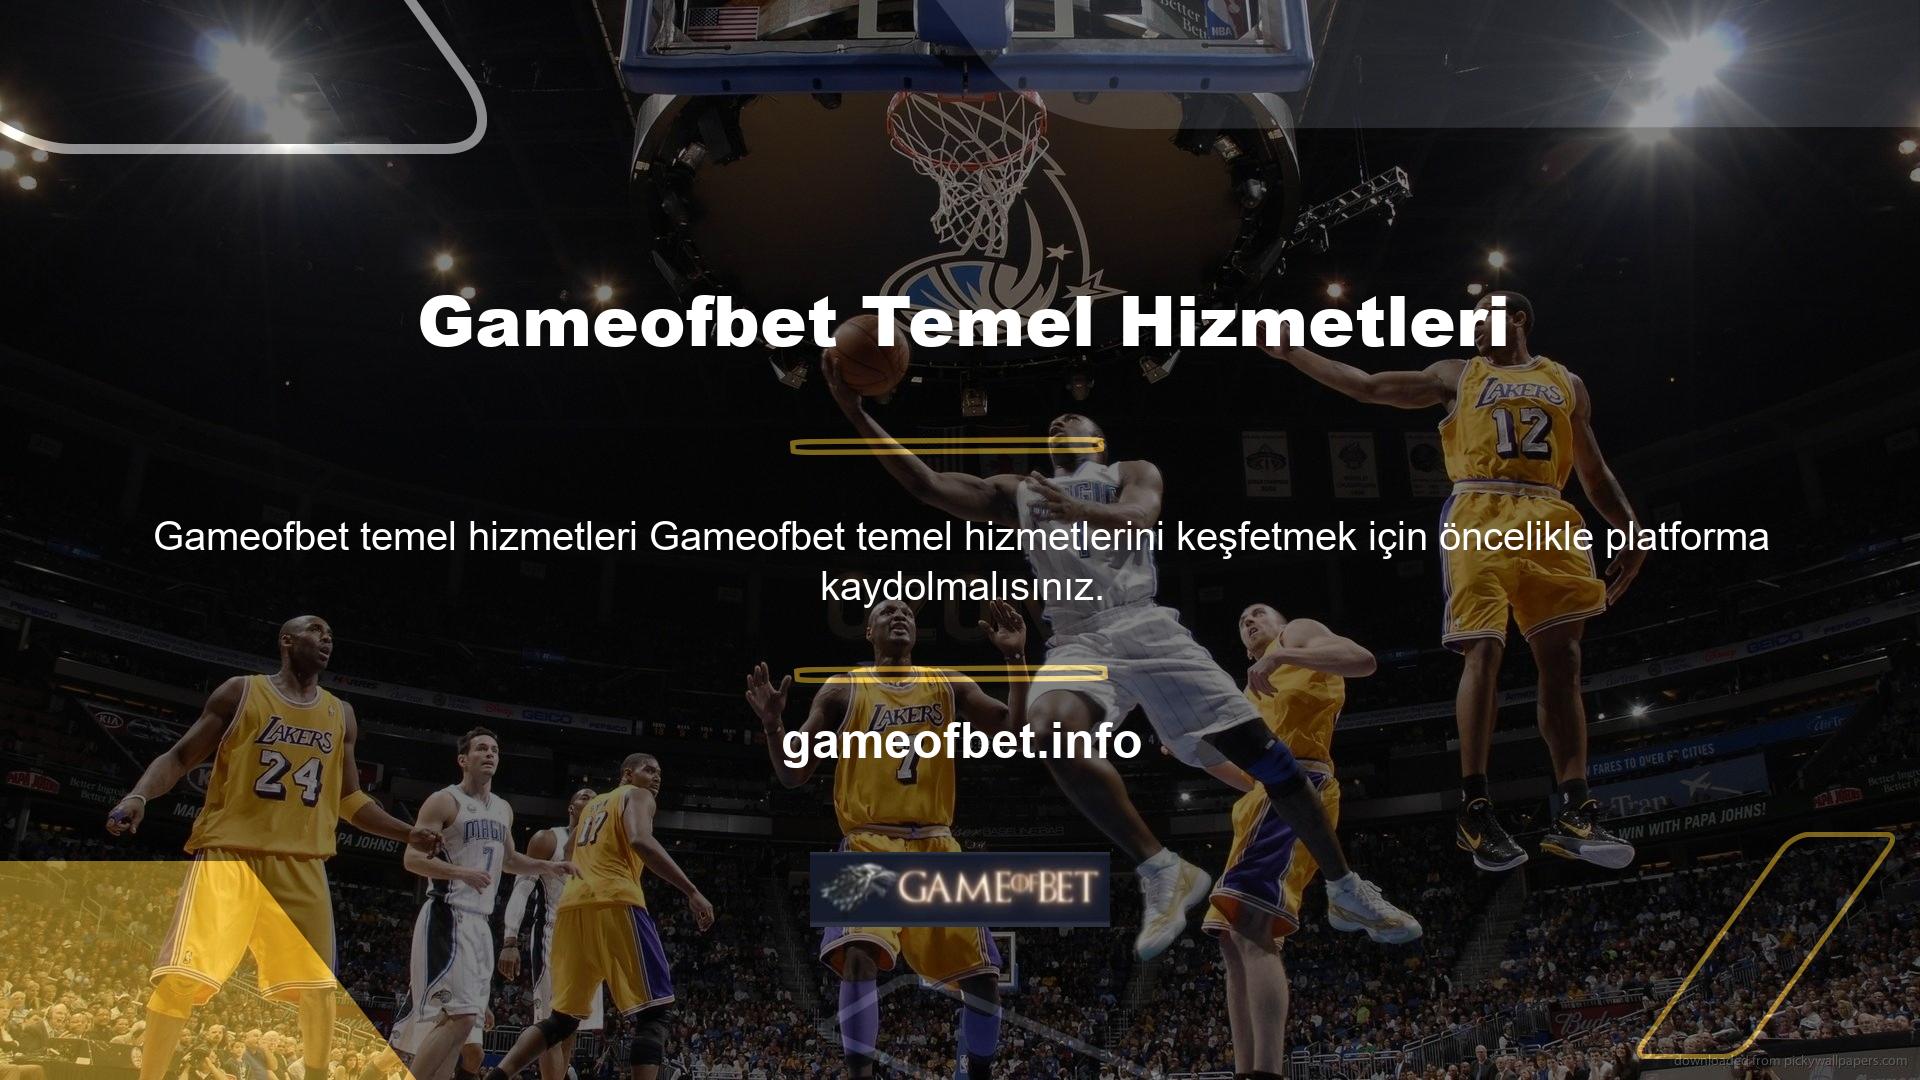 Gameofbet web sitesinde bu kadar çok hizmet seçeneği sunabiliyor olması teknik altyapısının ne kadar sağlam olduğunu gösteriyor